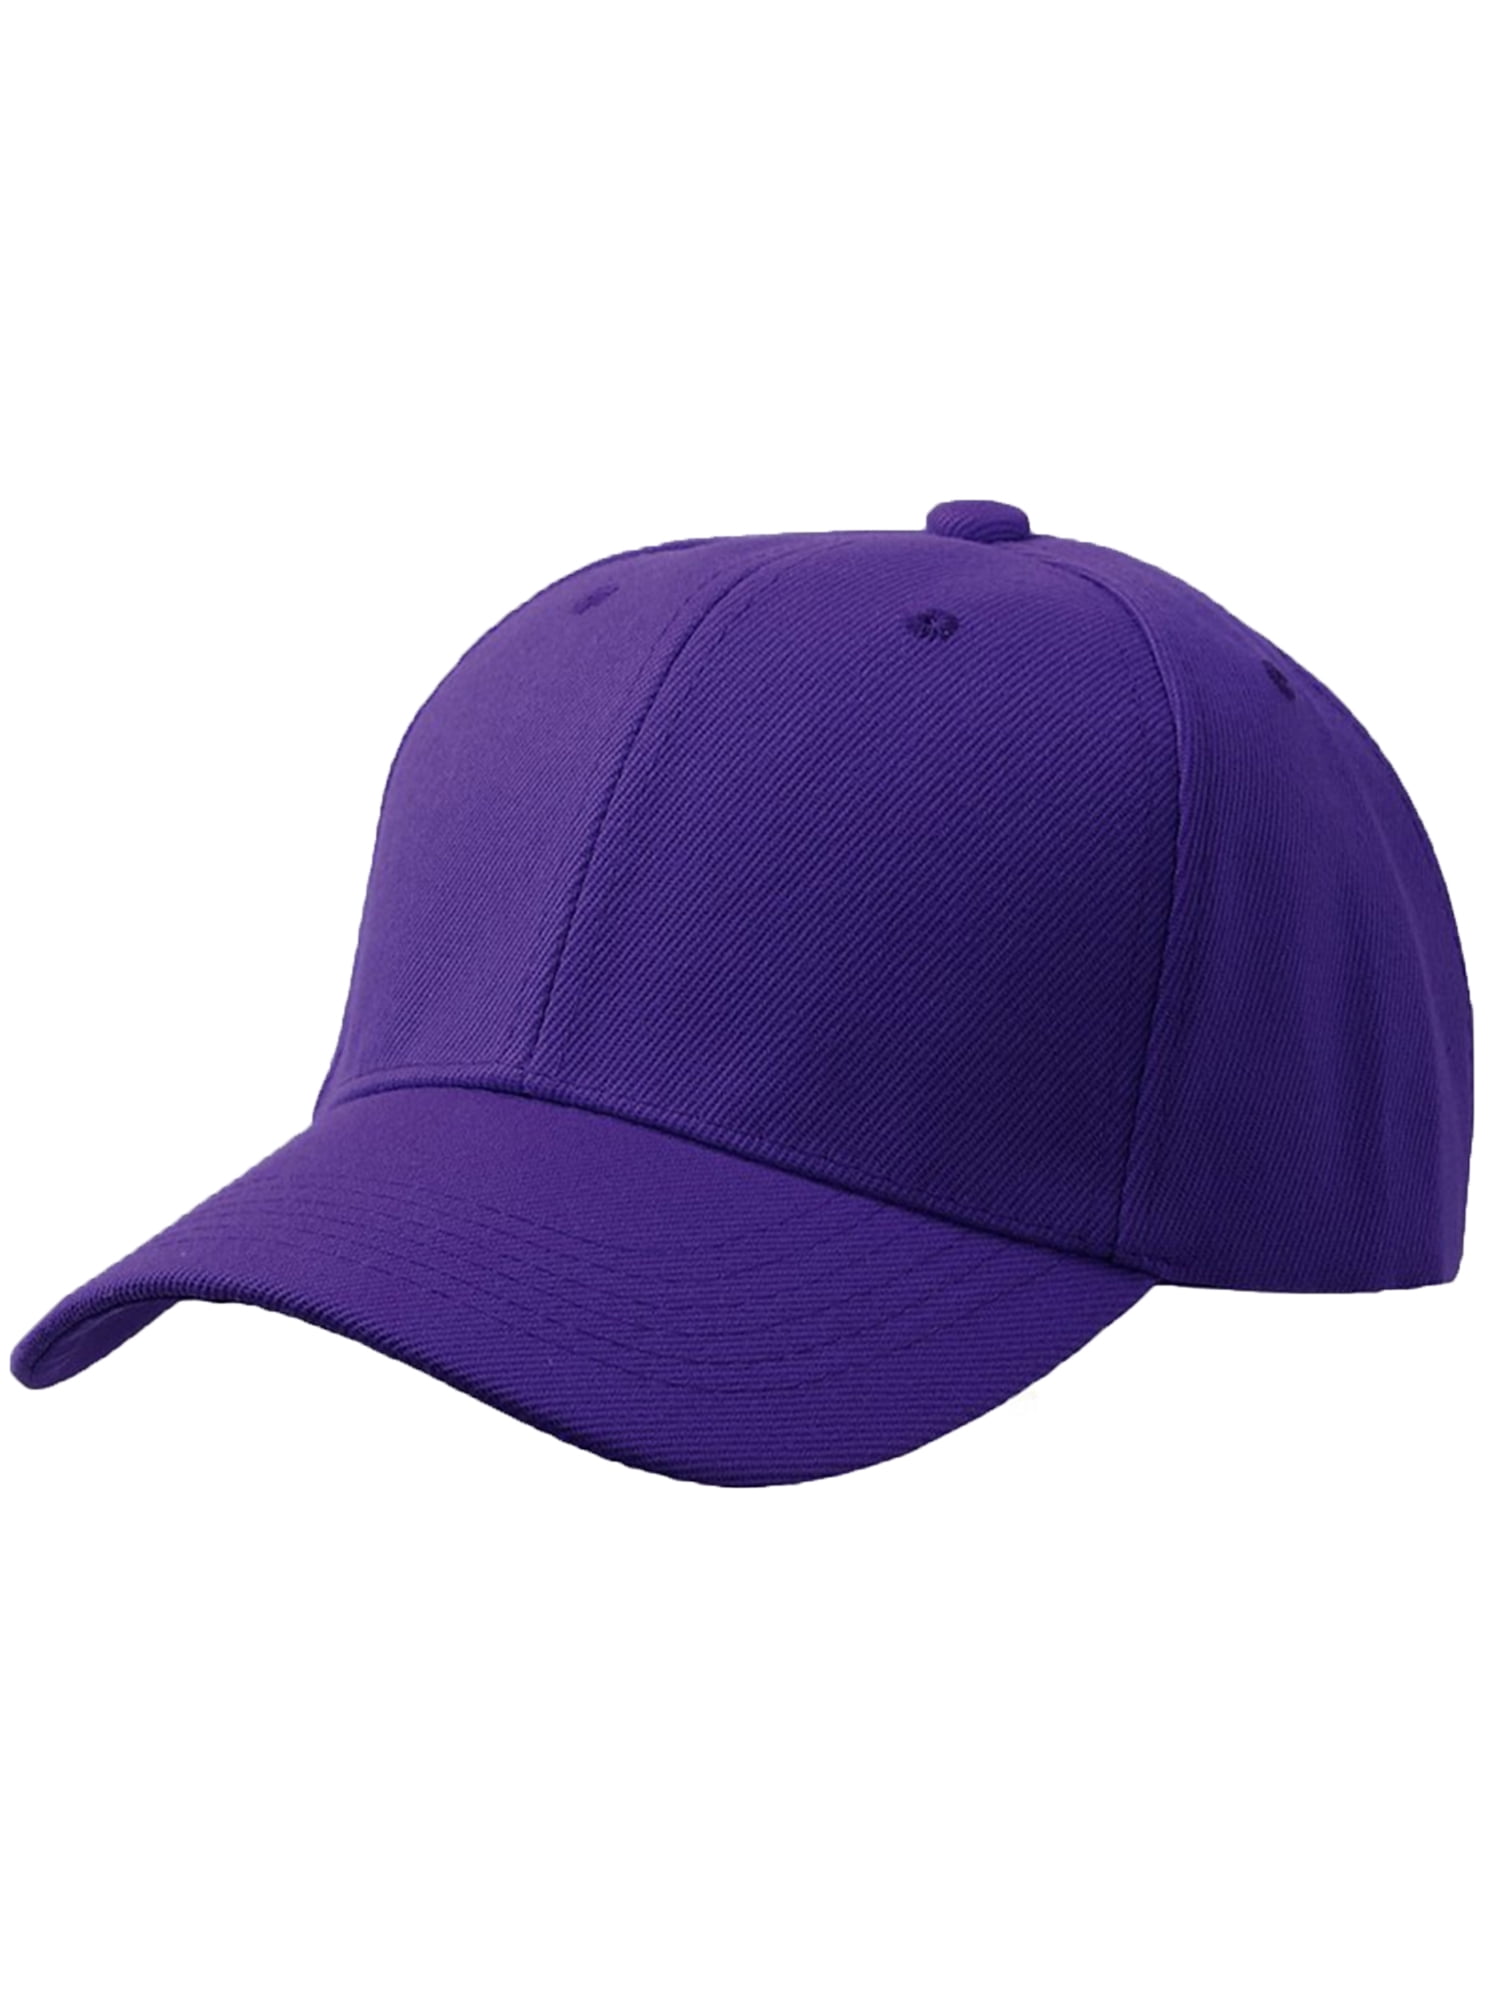 Purple Adjustable Baseball Cap 